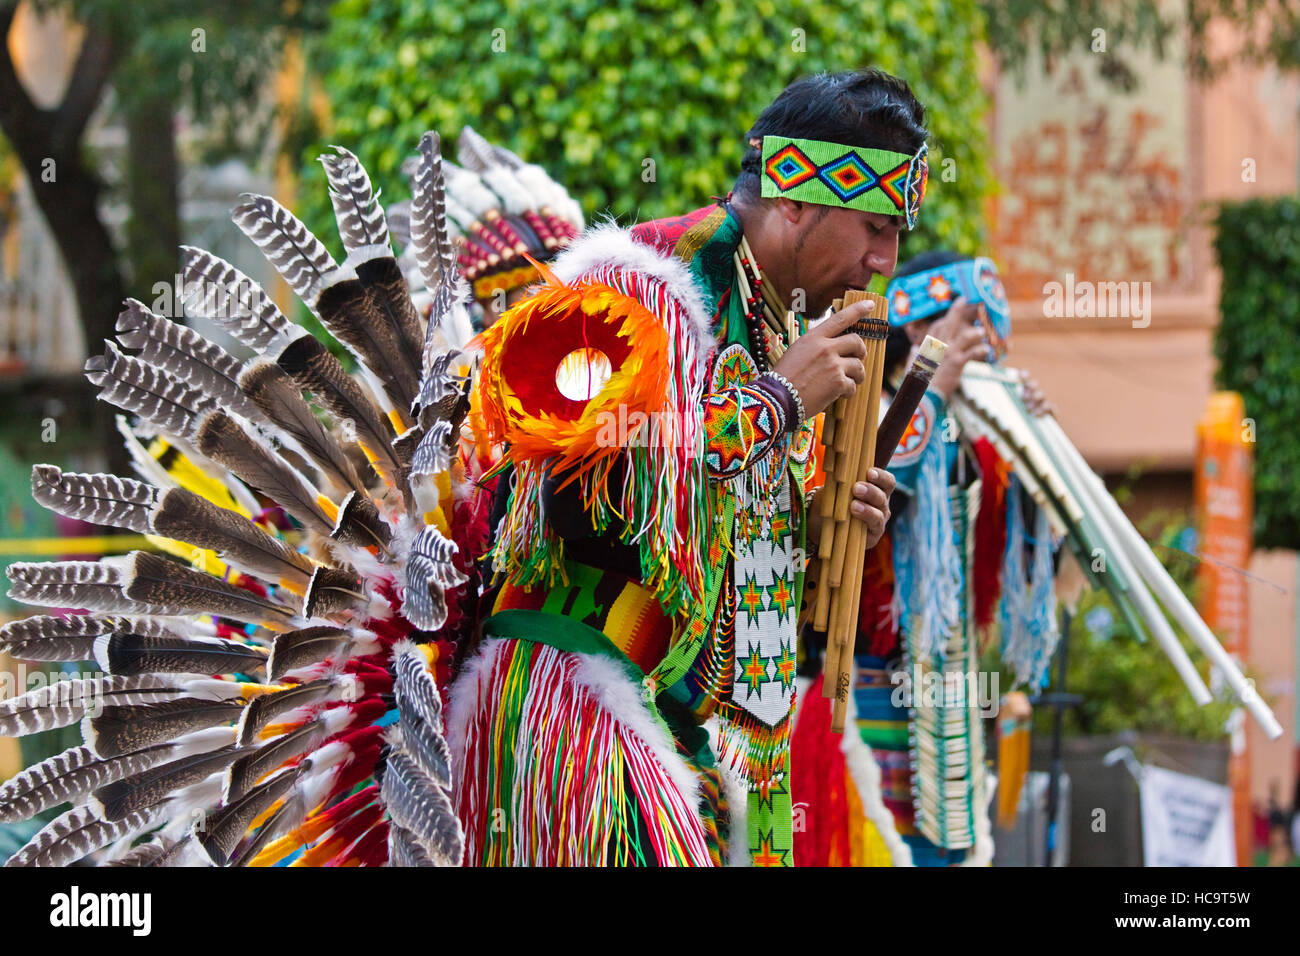 Le groupe équatorien RUNAS INTI joue flûte de pan et des danses traditionnelles en costume Indiginous - Guanajuato, Mexique Banque D'Images